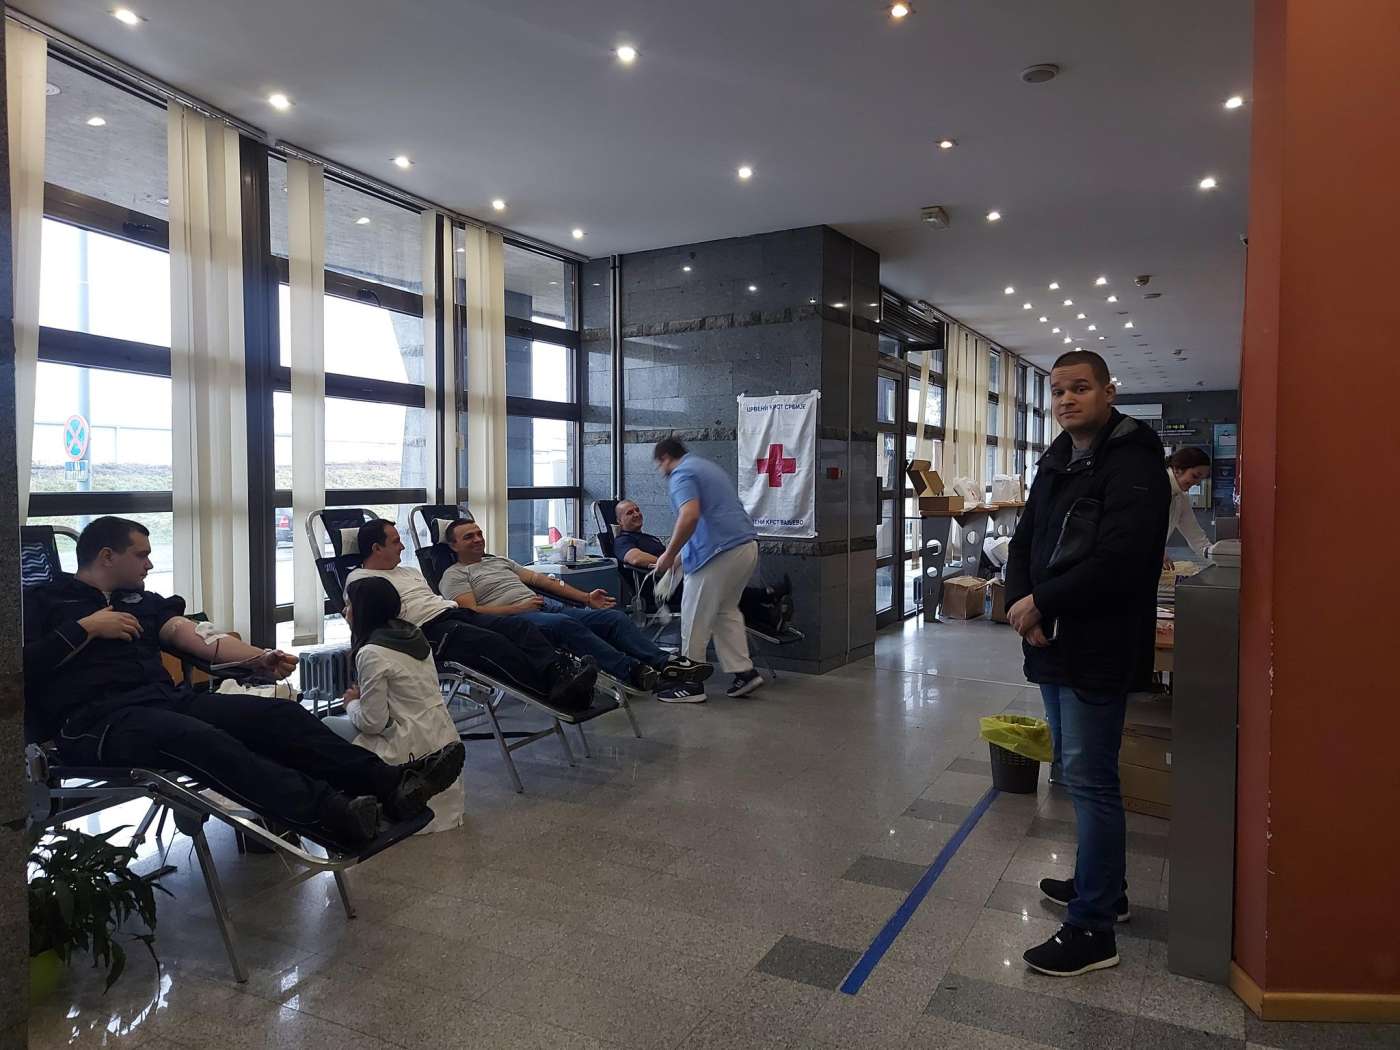 28.01.2023. – Još jedna velika akcija dobrovoljnog davanja krvi u PU Valjevo – 87. ponudilo, a 84 uspešno dalo krv.